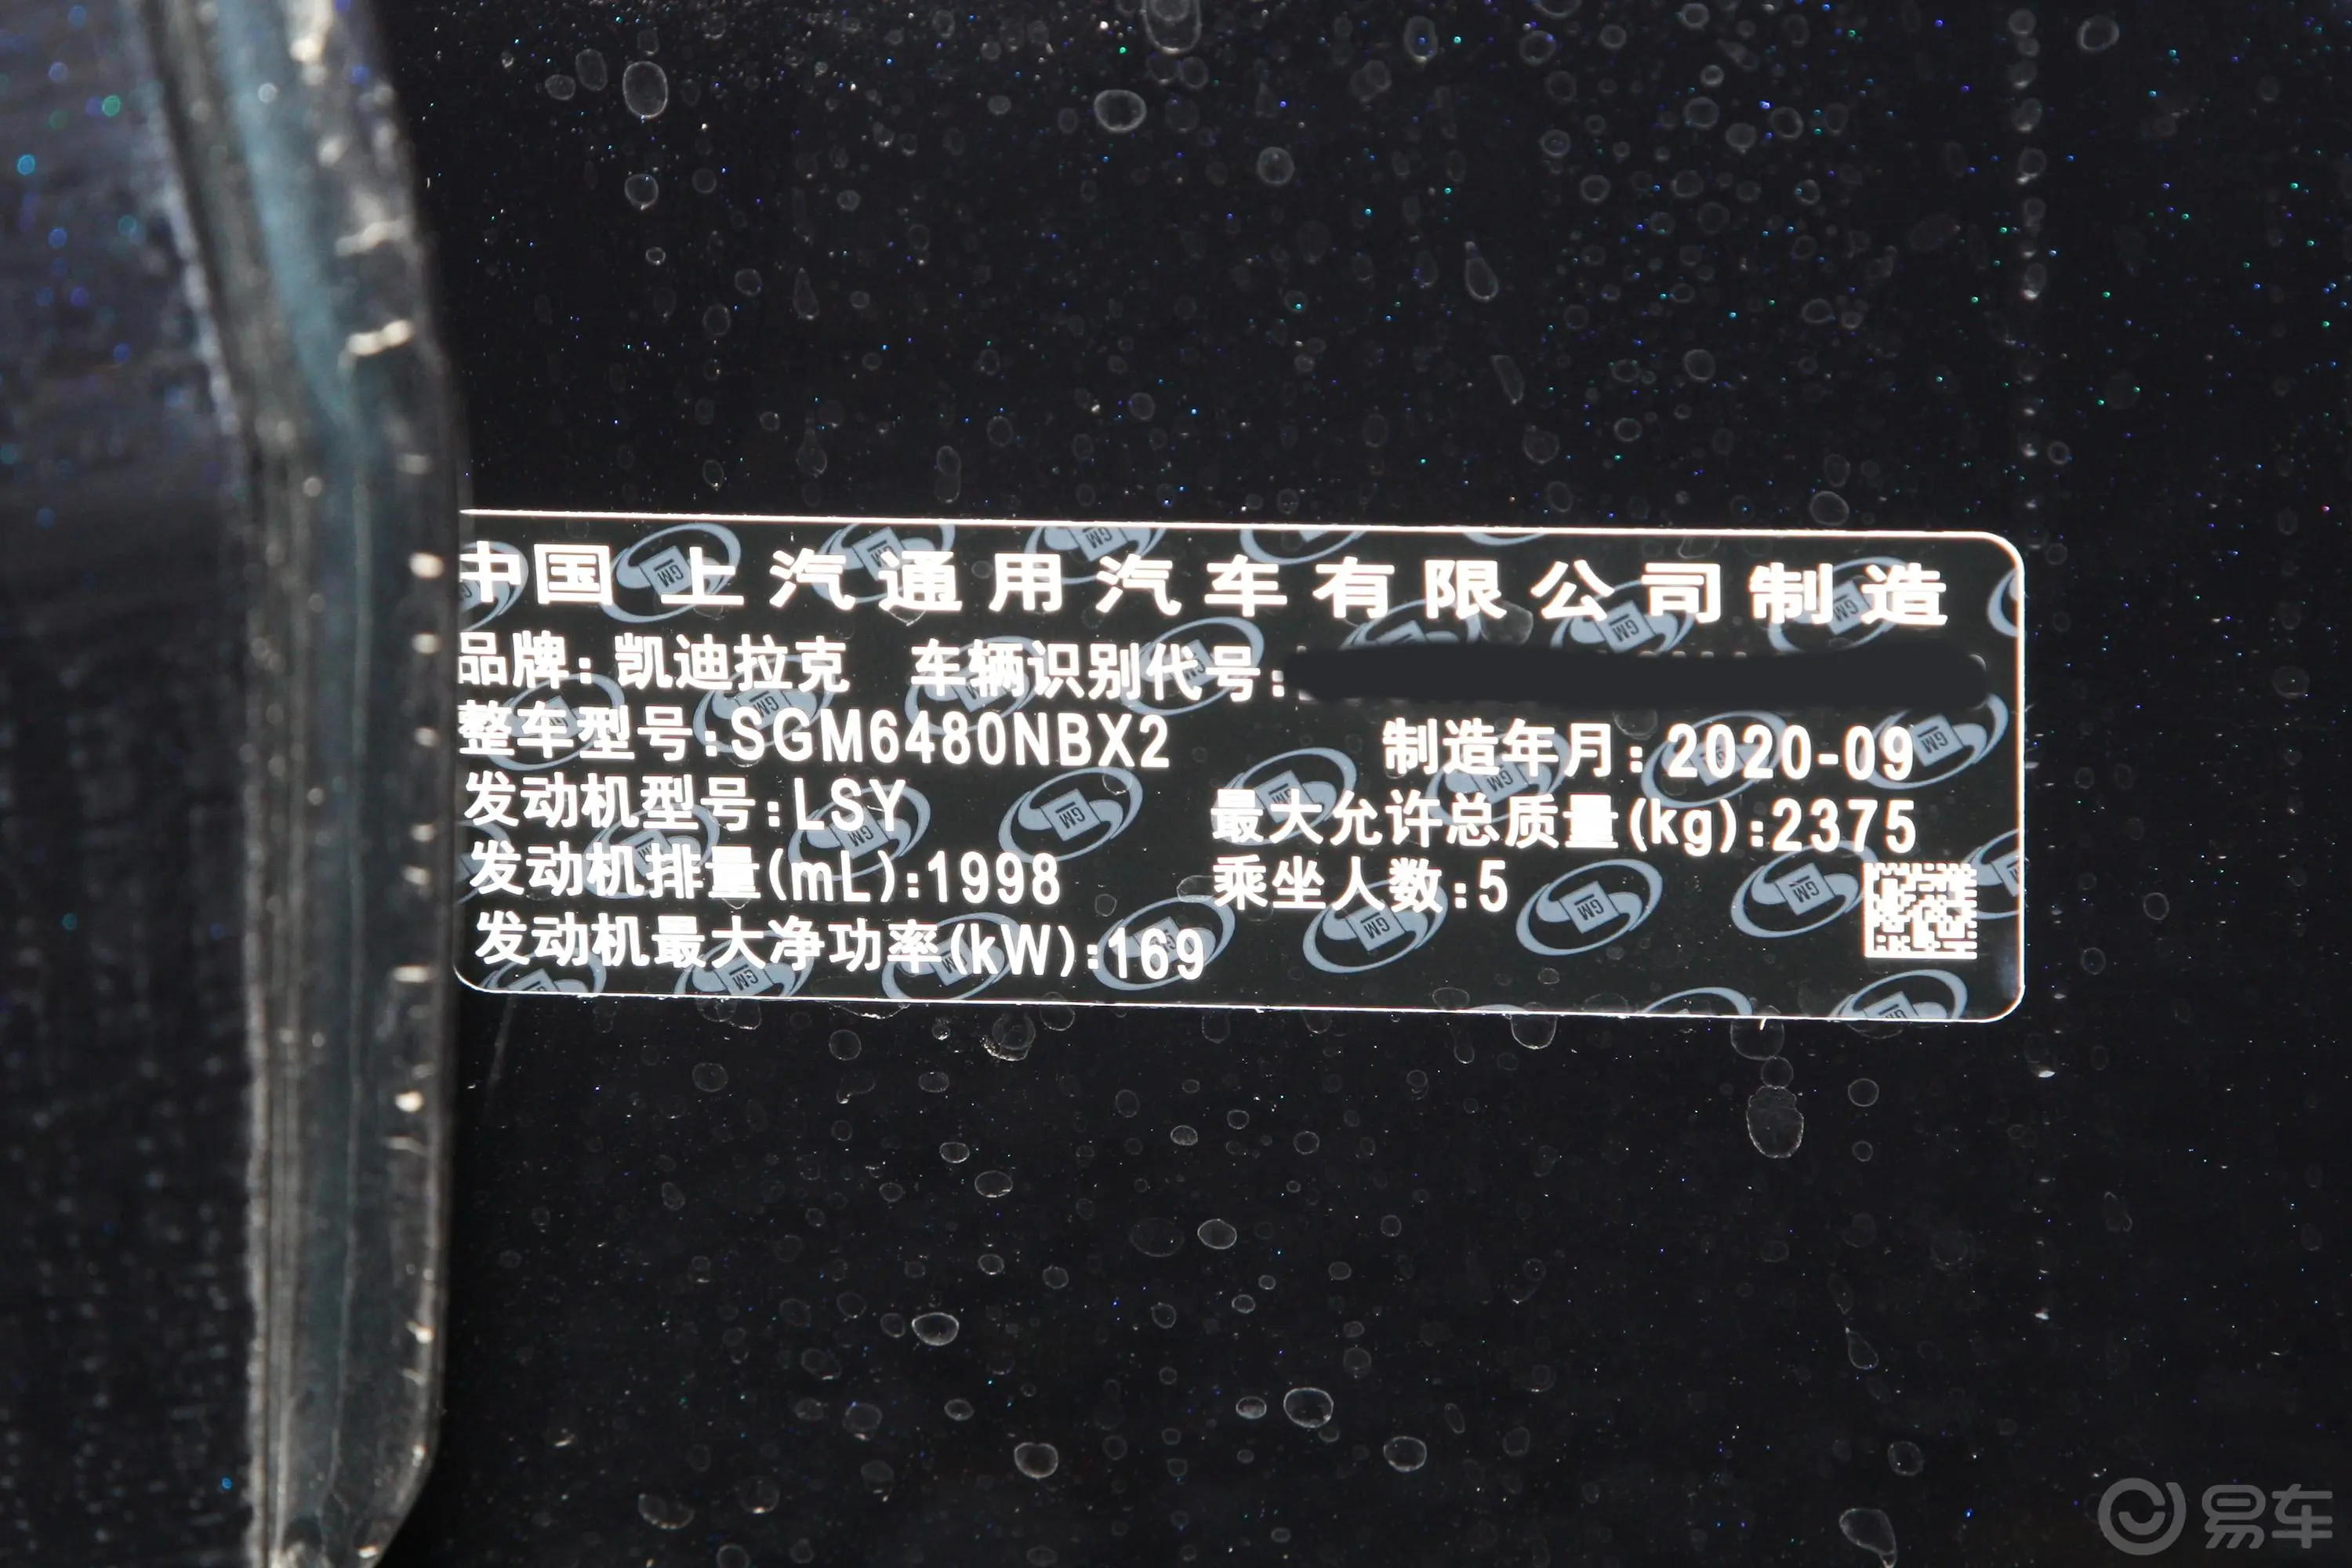 凯迪拉克XT528T 四驱 铂金运动版车辆信息铭牌